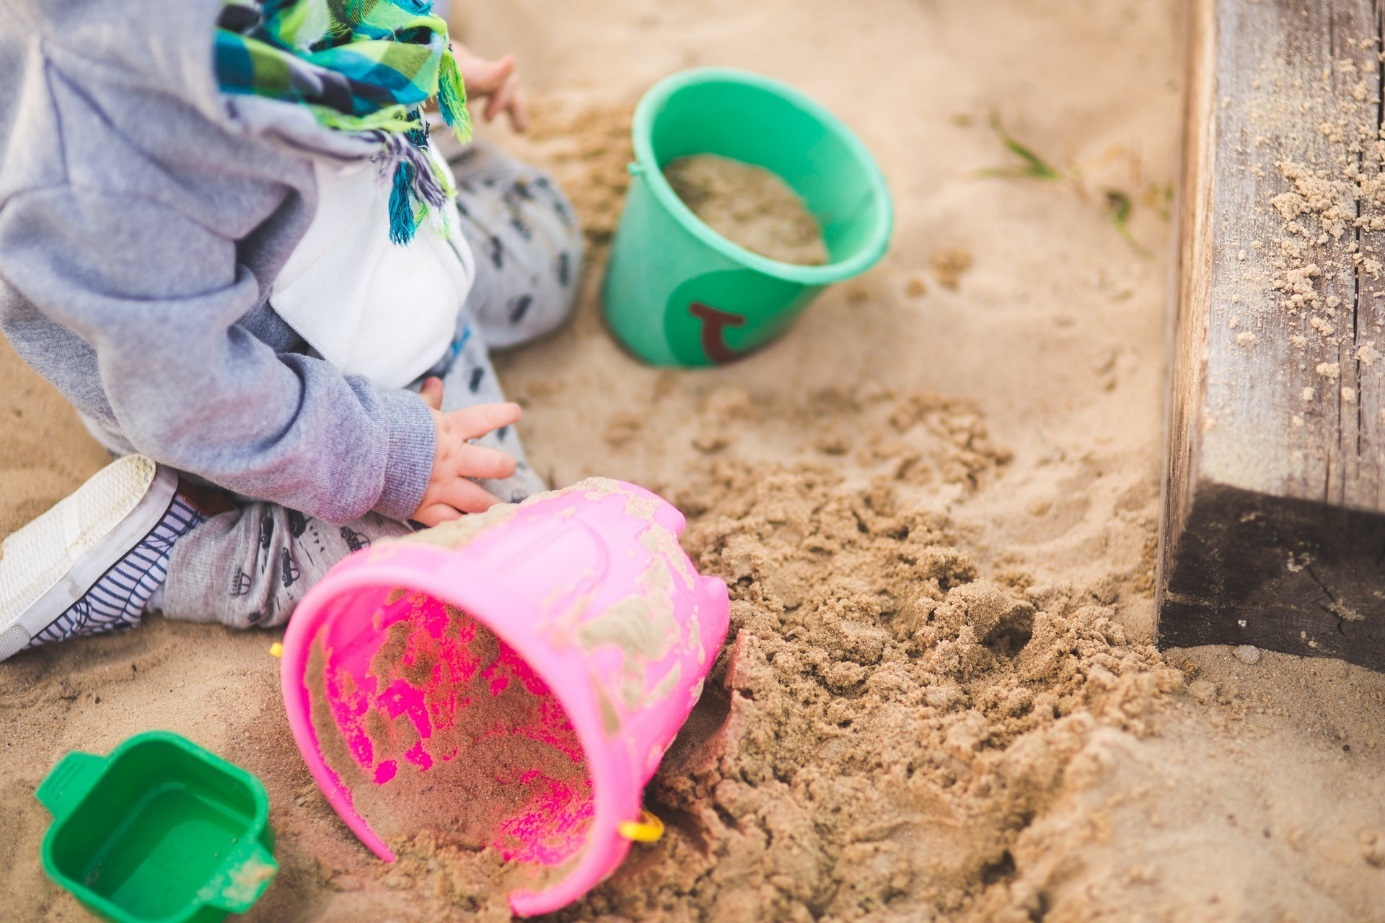 Spielendes Kind im Sandkasten.